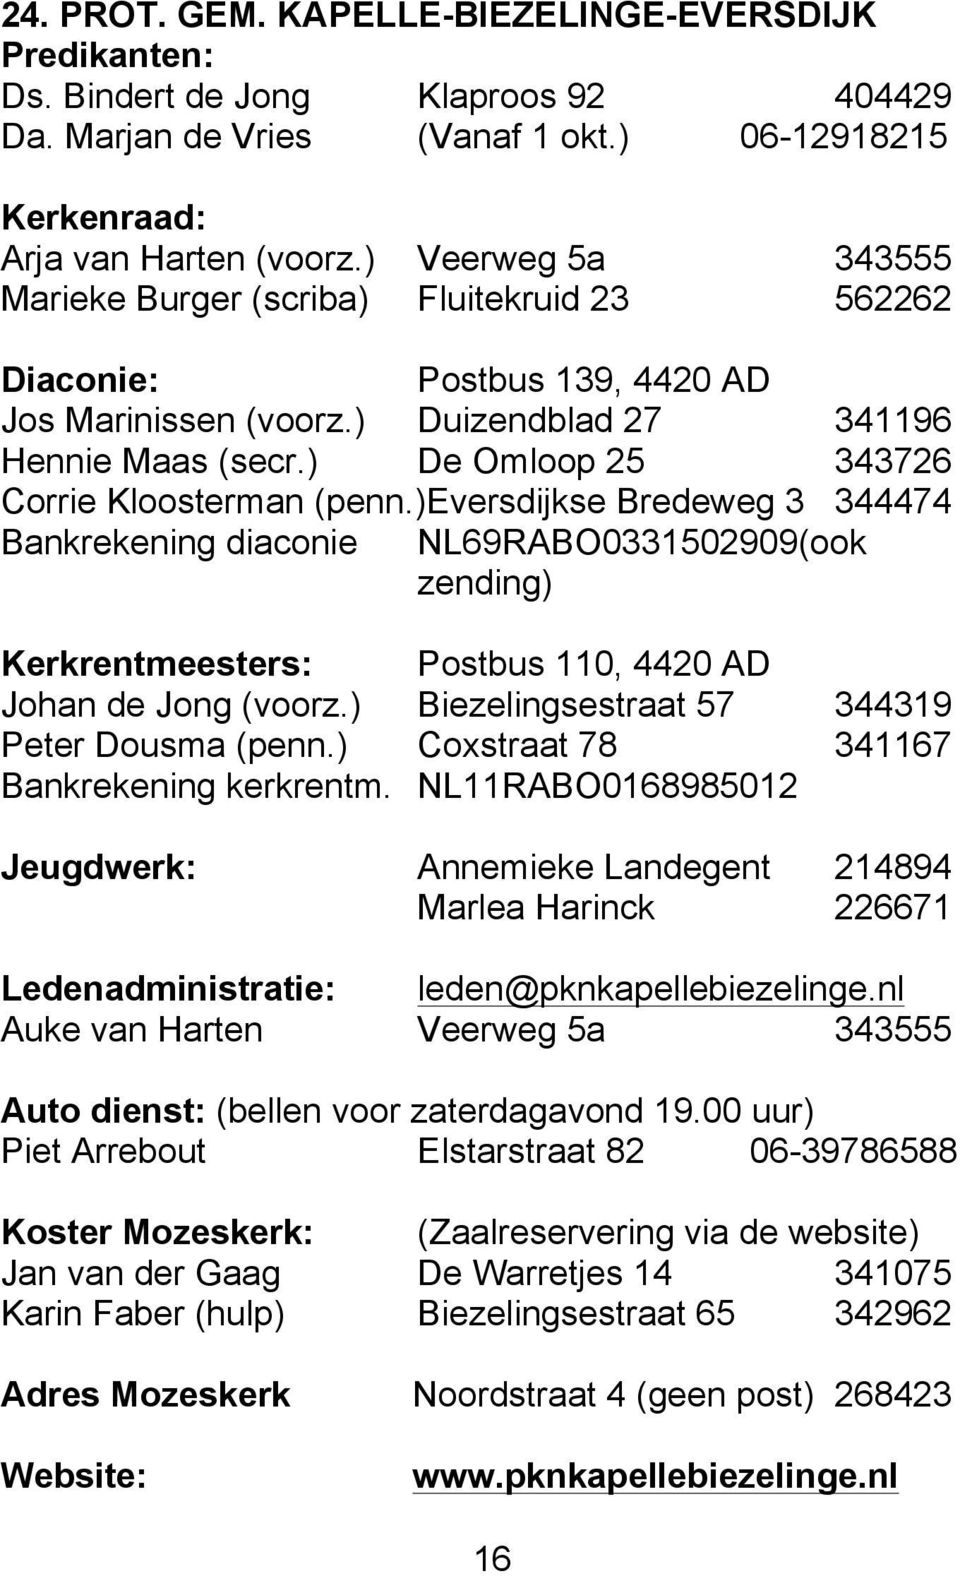 ) De Omloop 25 343726 Corrie Kloosterman (penn.)eversdijkse Bredeweg 3 344474 Bankrekening diaconie NL69RABO0331502909(ook zending) Kerkrentmeesters: Postbus 110, 4420 AD Johan de Jong (voorz.